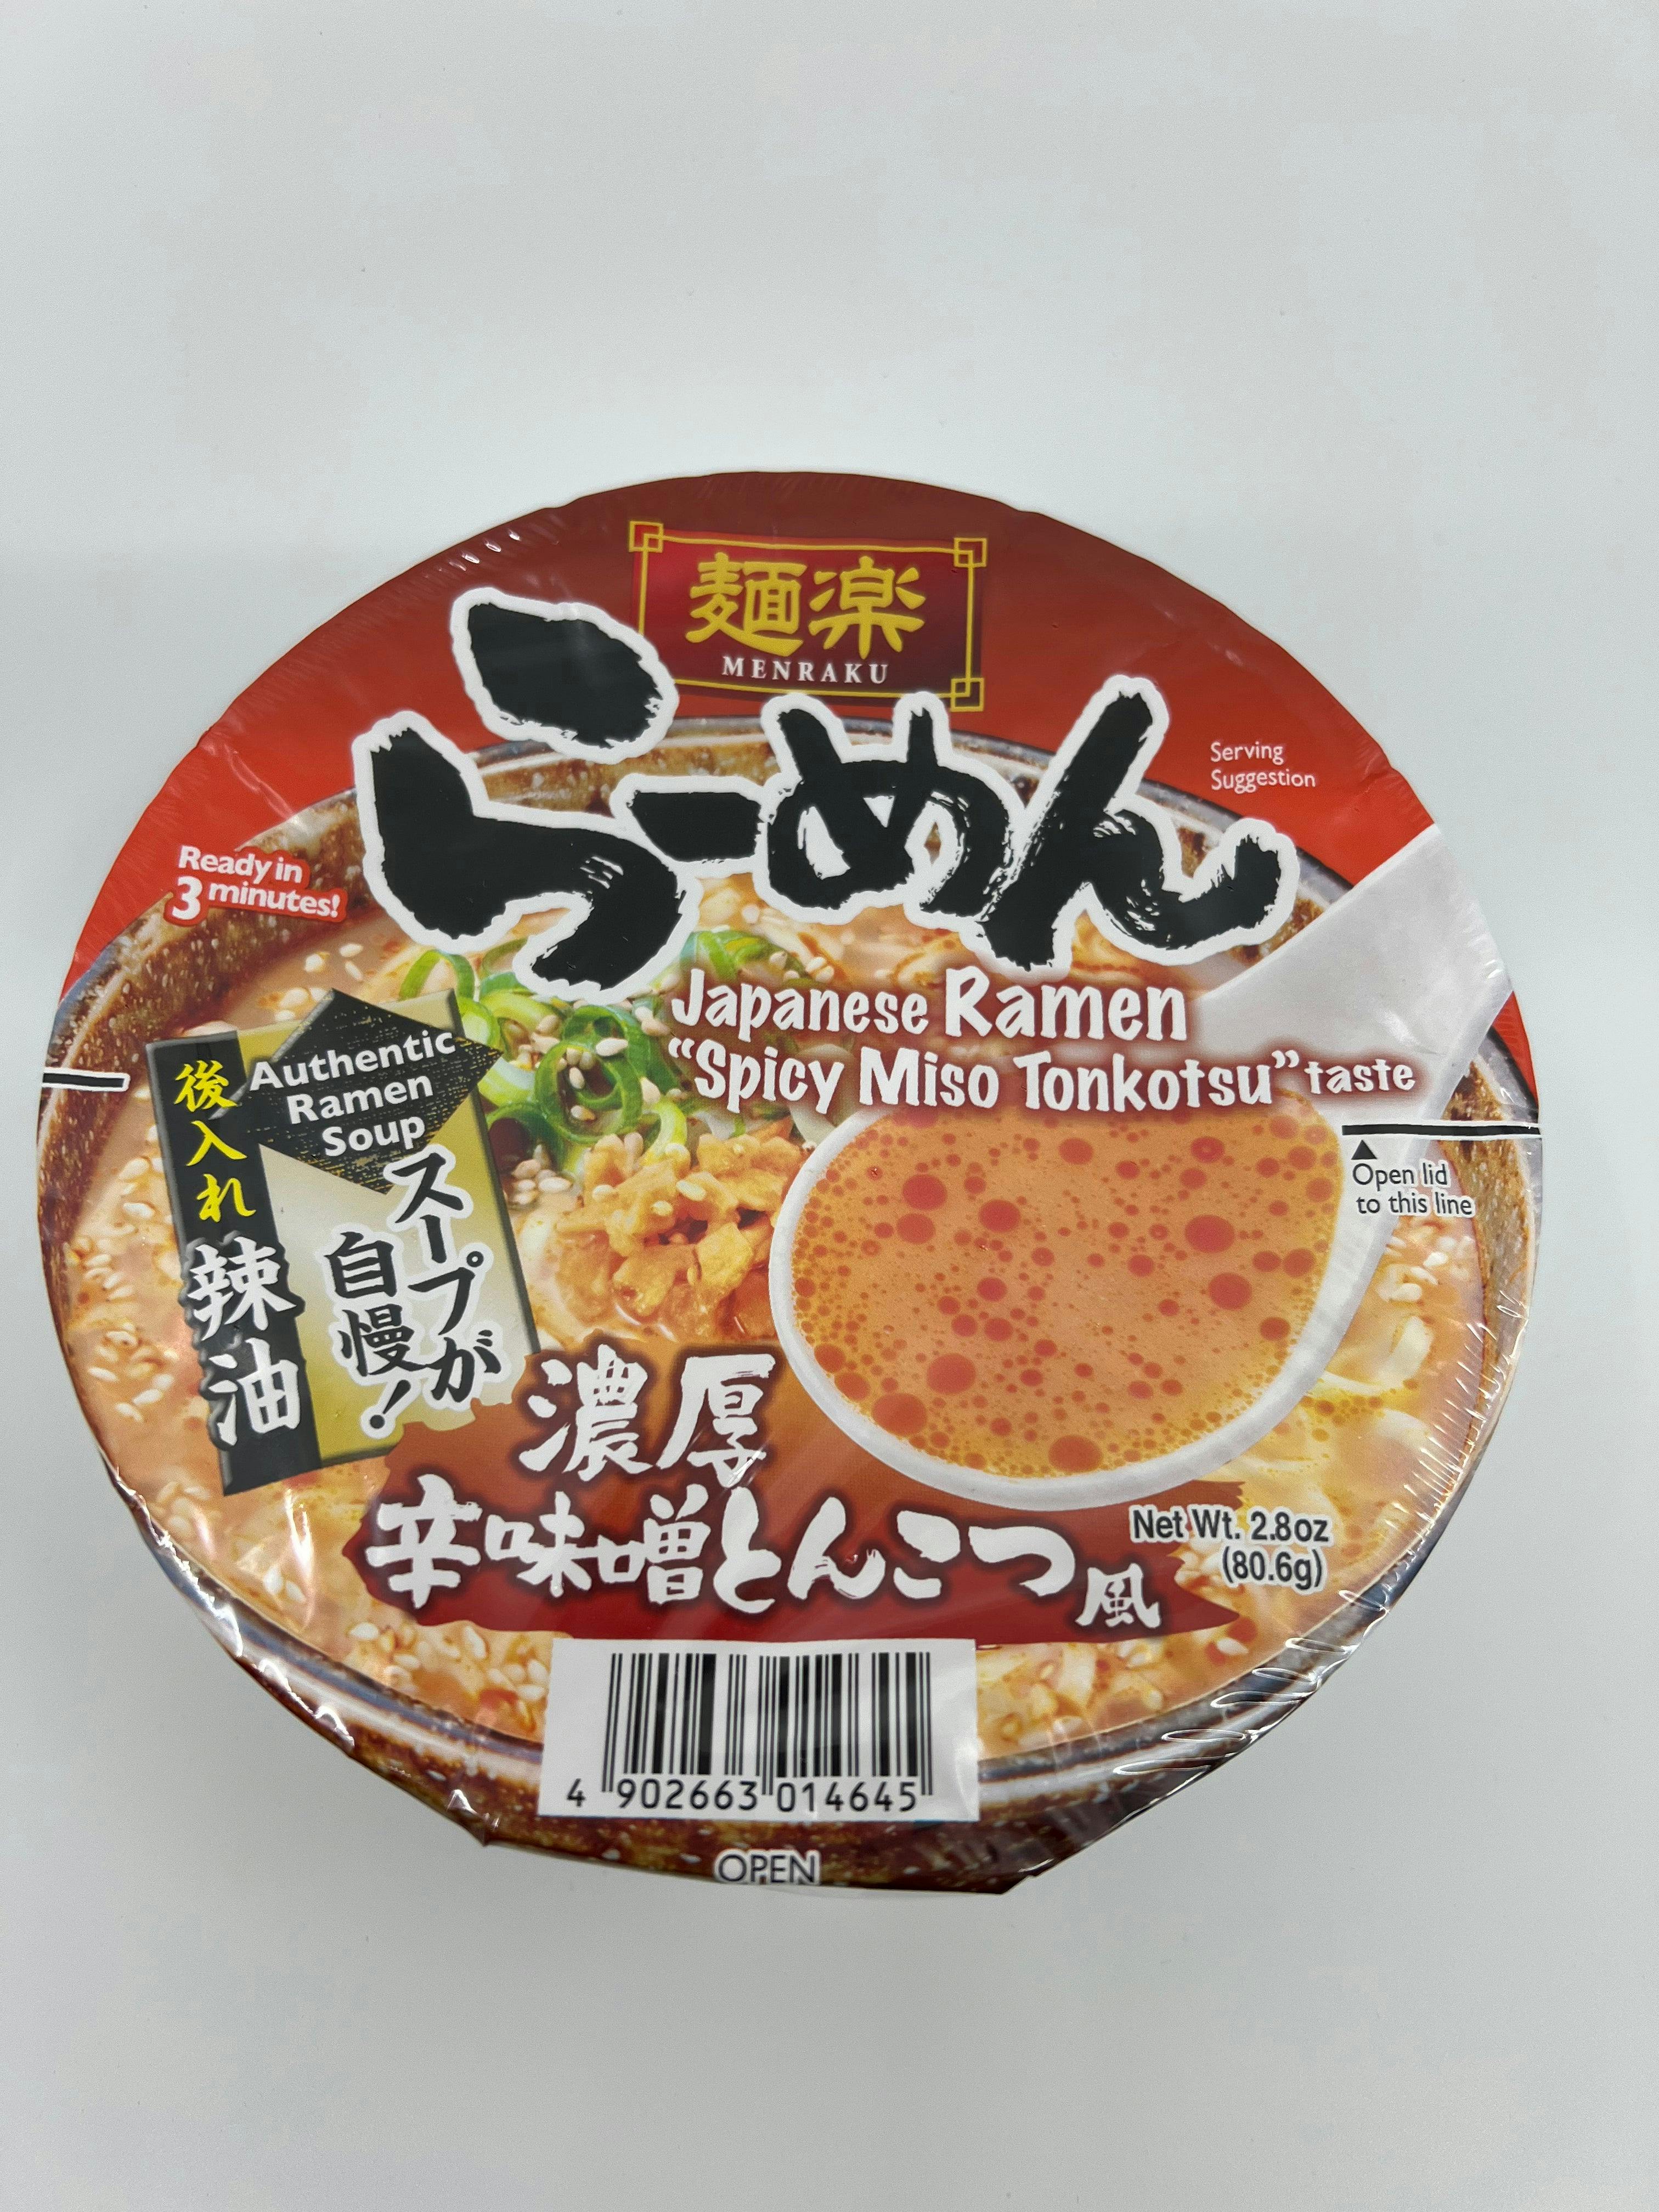 日本 Hikari Menraku 面乐 速食拉面 辛味噌豚骨 碗装 Spicy Miso Tonkotsu Ramen